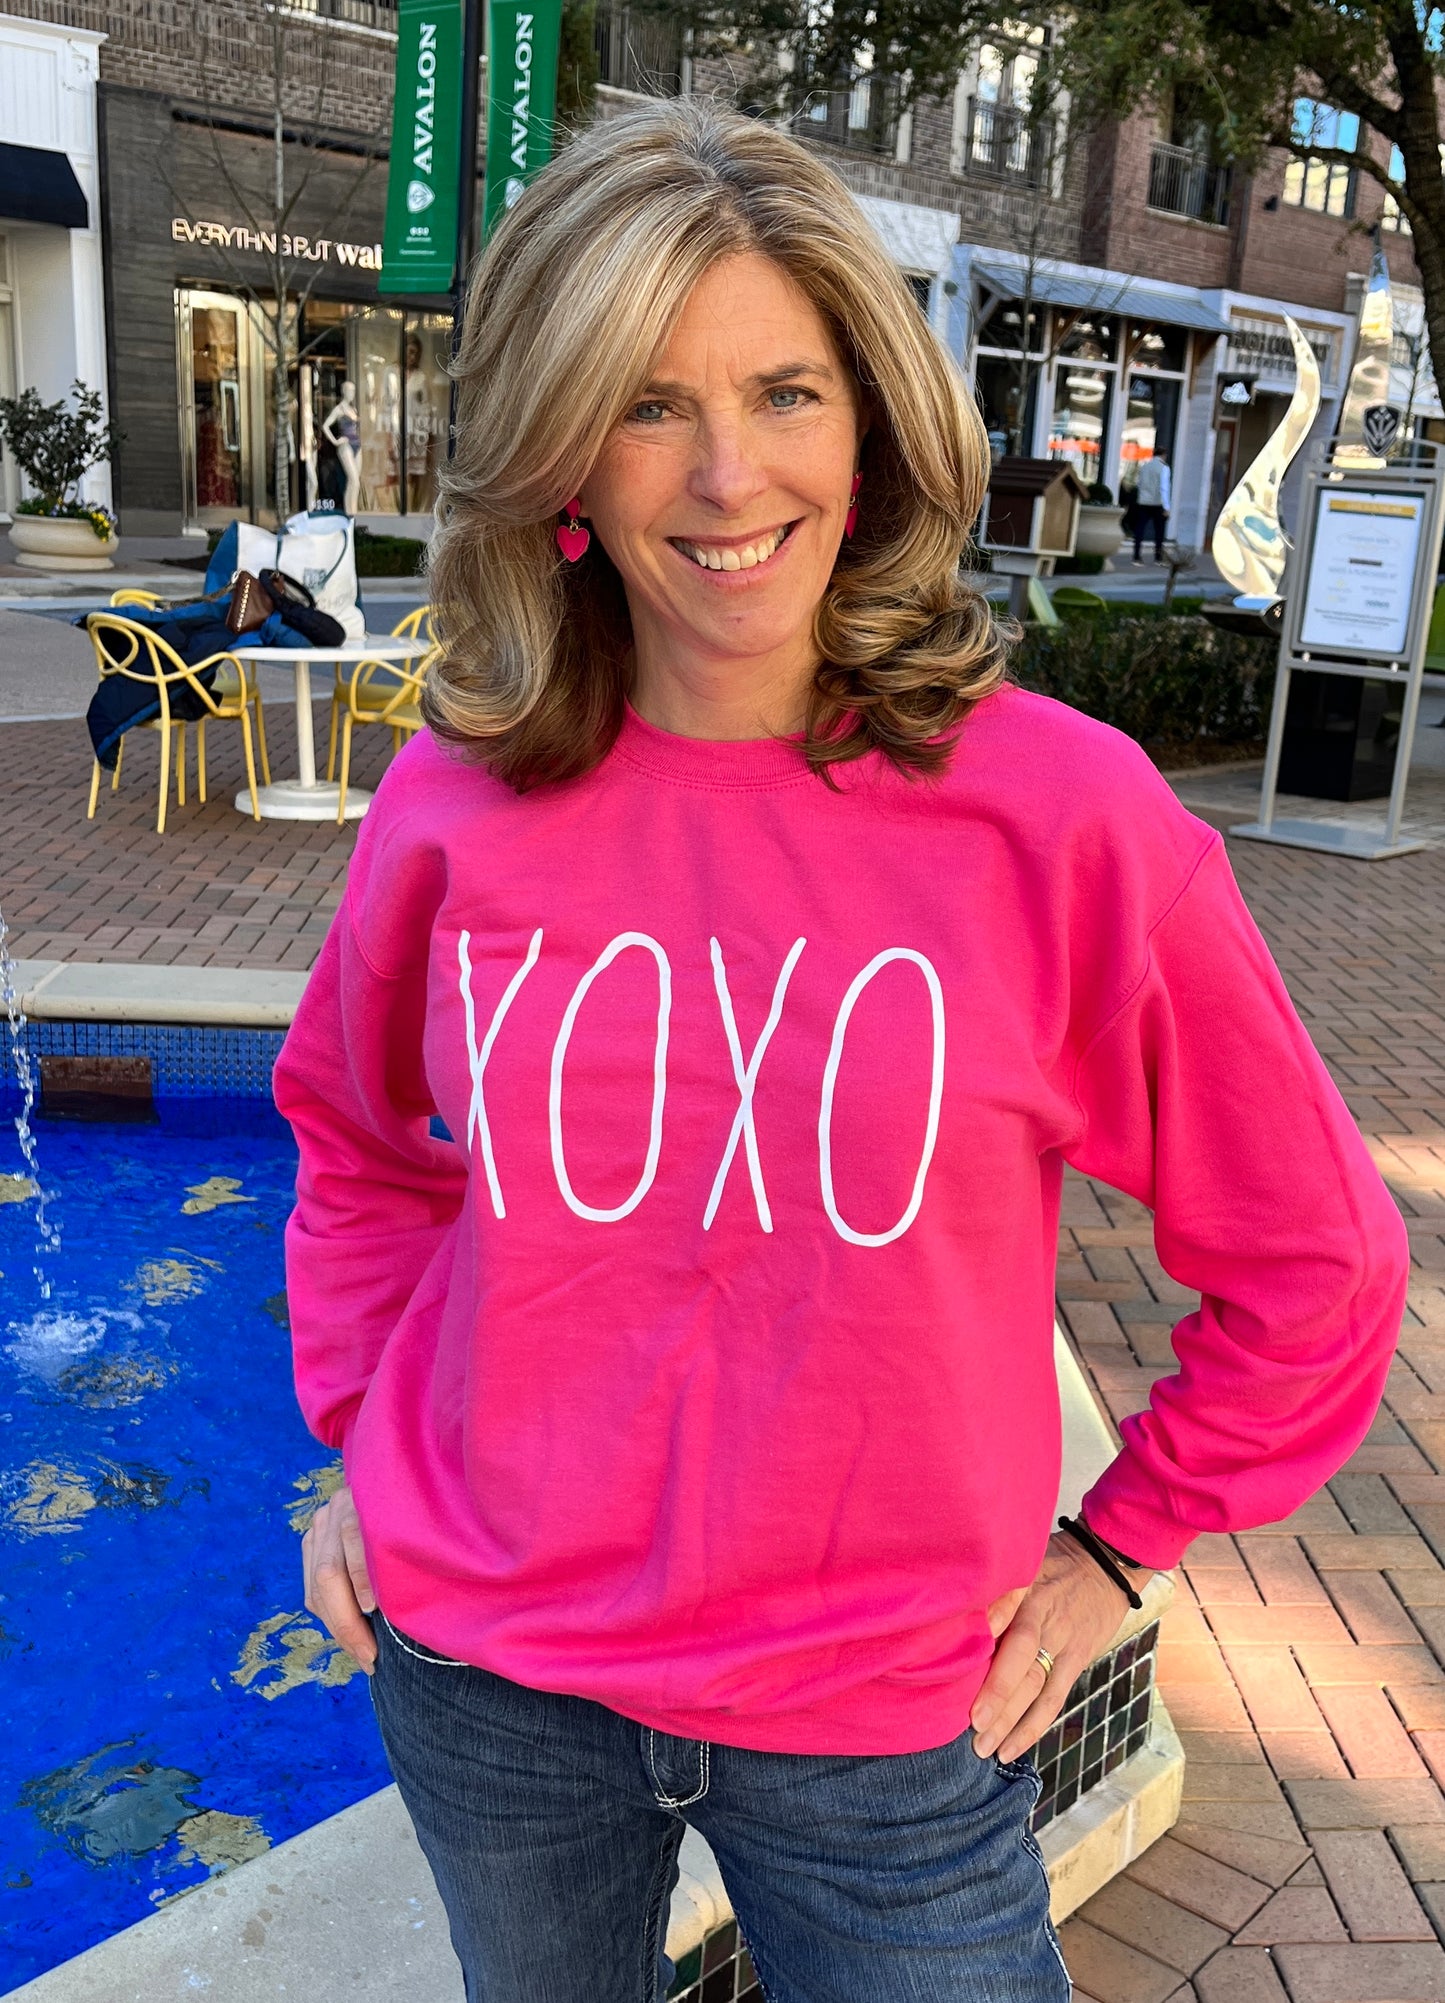 XOXO Hot Pink Sweatshirt